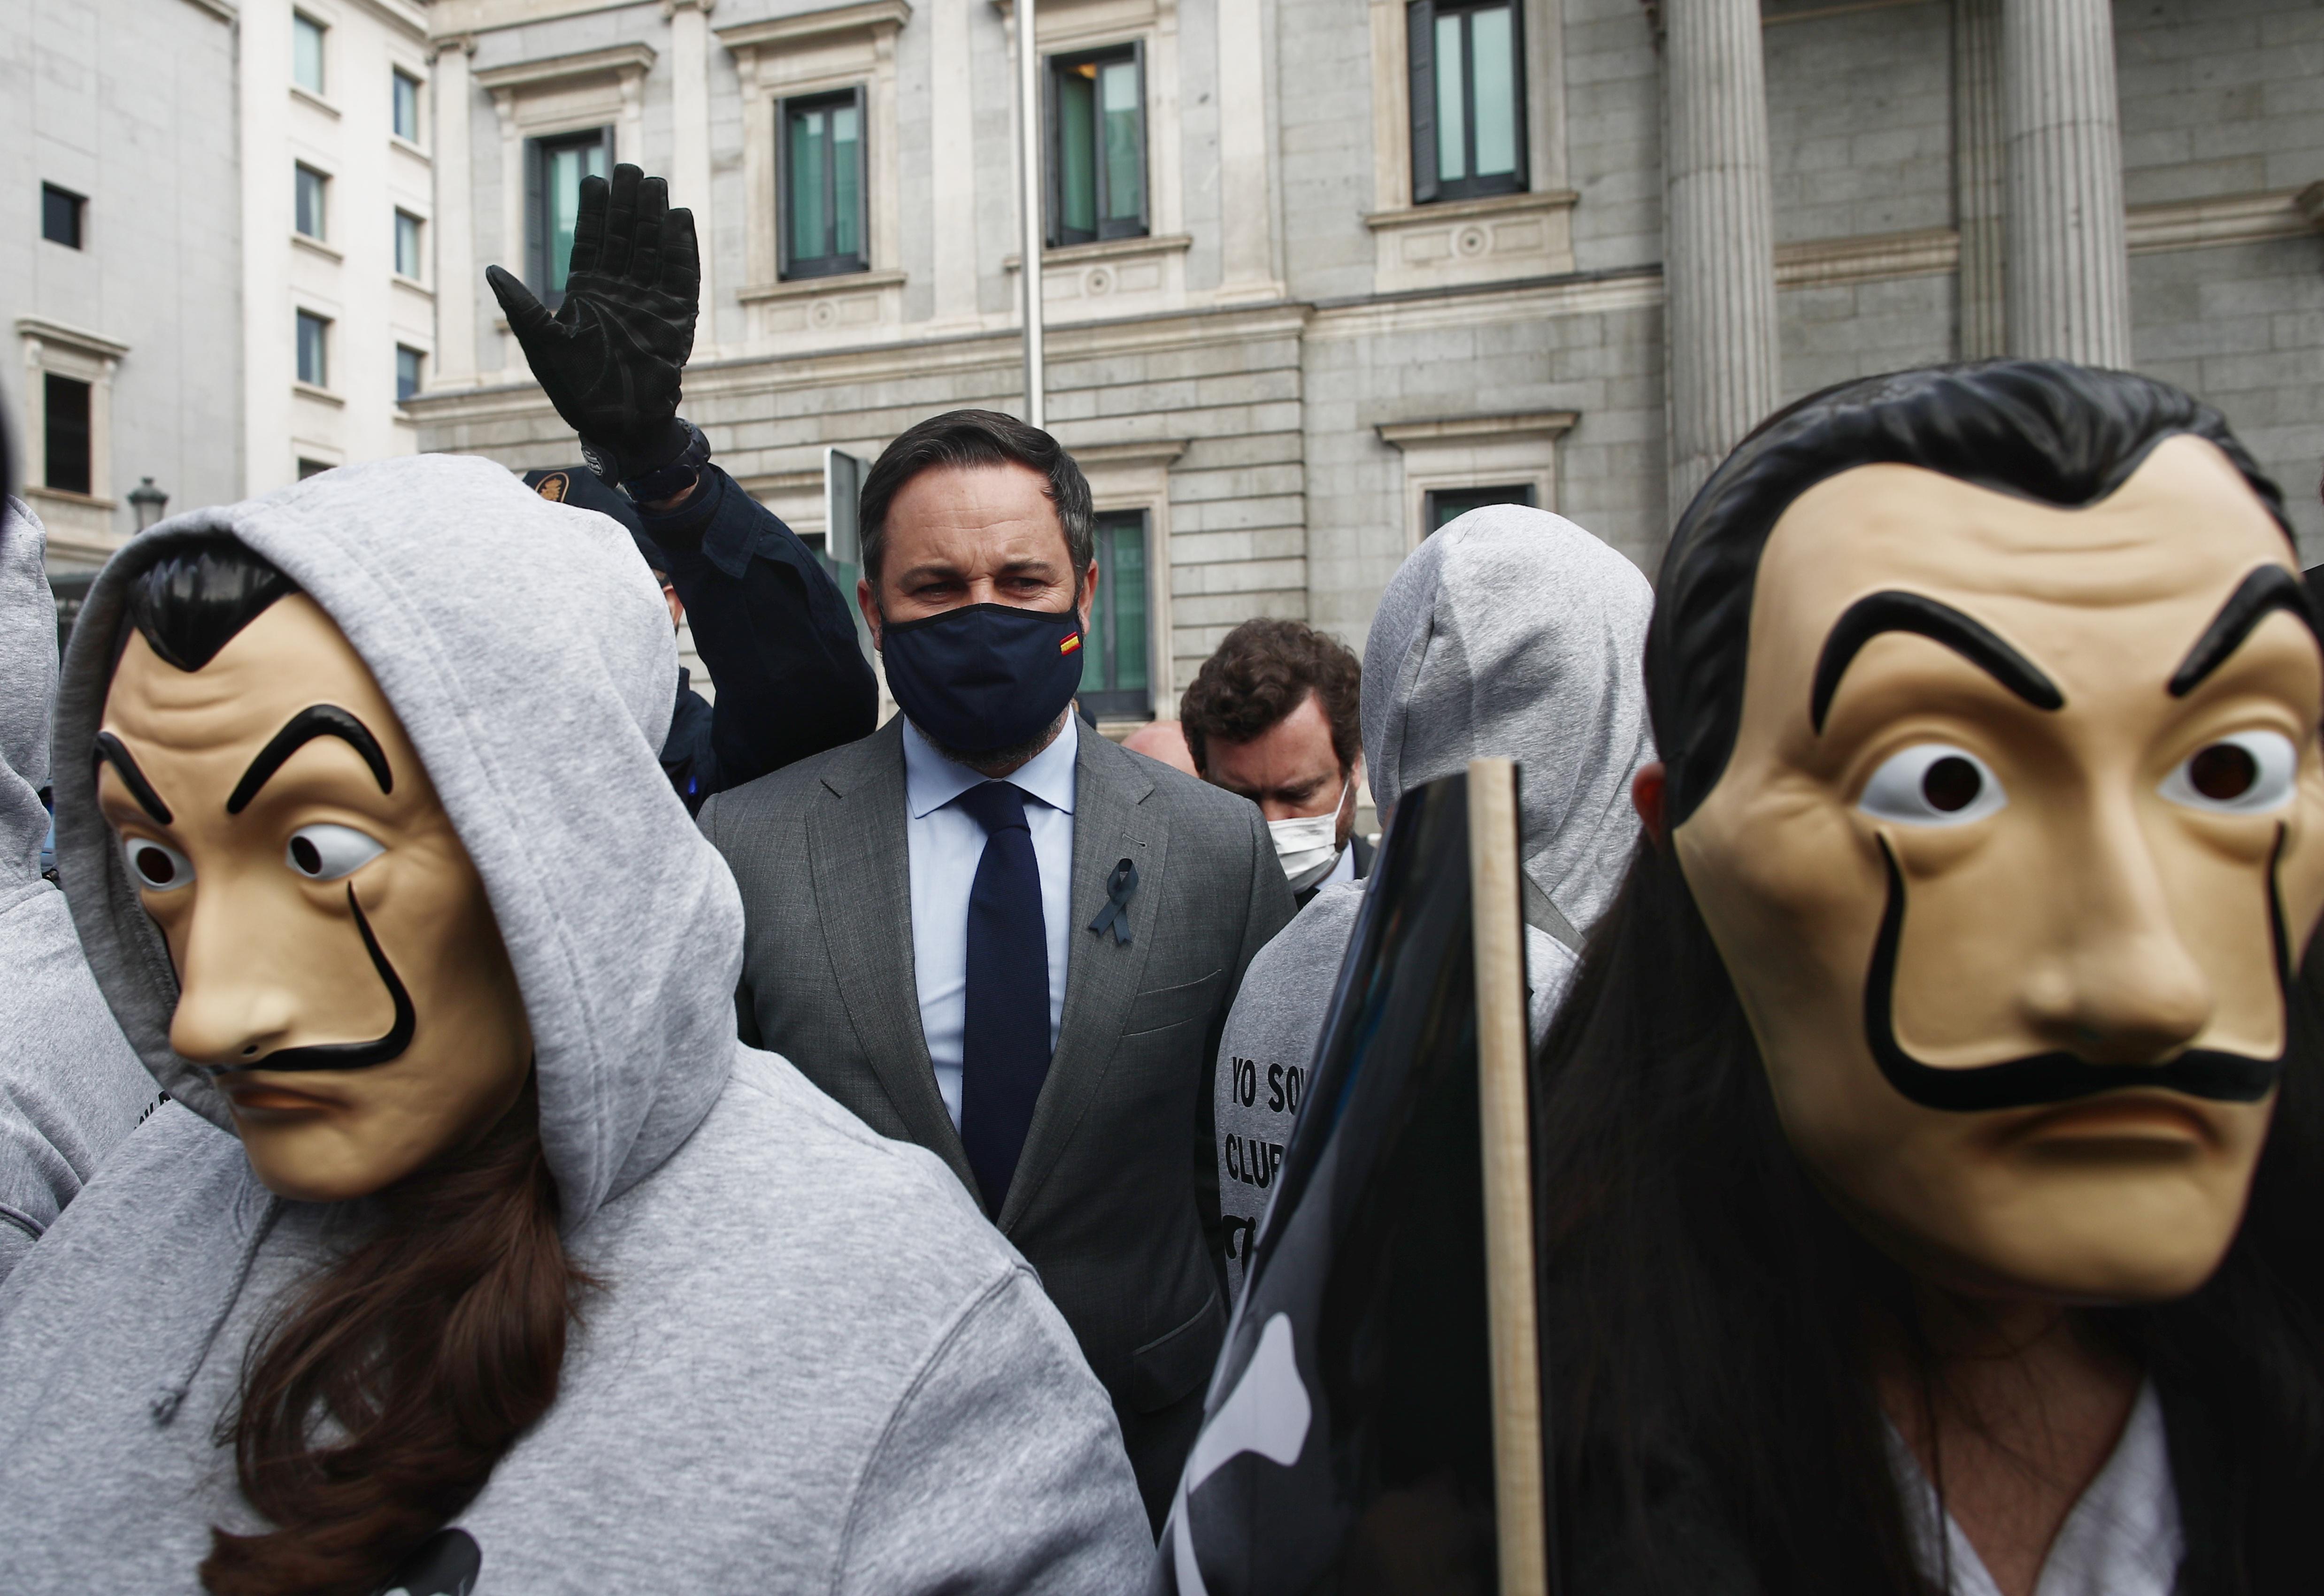 Manifestantes con máscaras de Dalí y entre ellos, el presidente de Vox, Santiago Abascal. EP